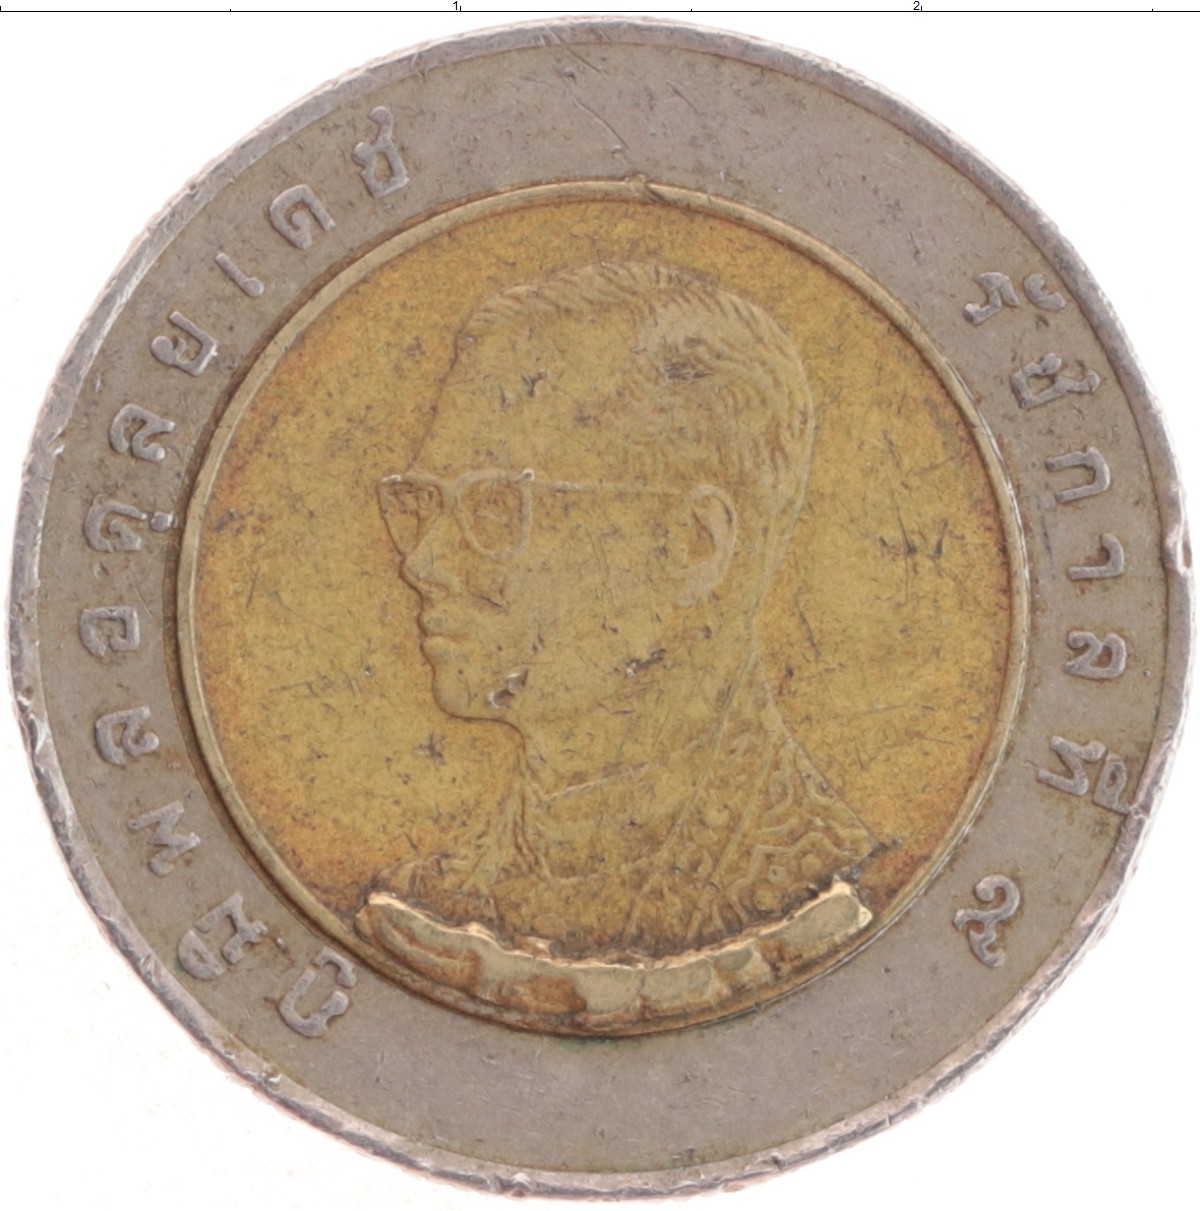 60 бат в рублях. Редкая монета 10 бат. Монеты Тайланда 1861. Монеты Тайланда старые 1861. 10 Бат монета фото.